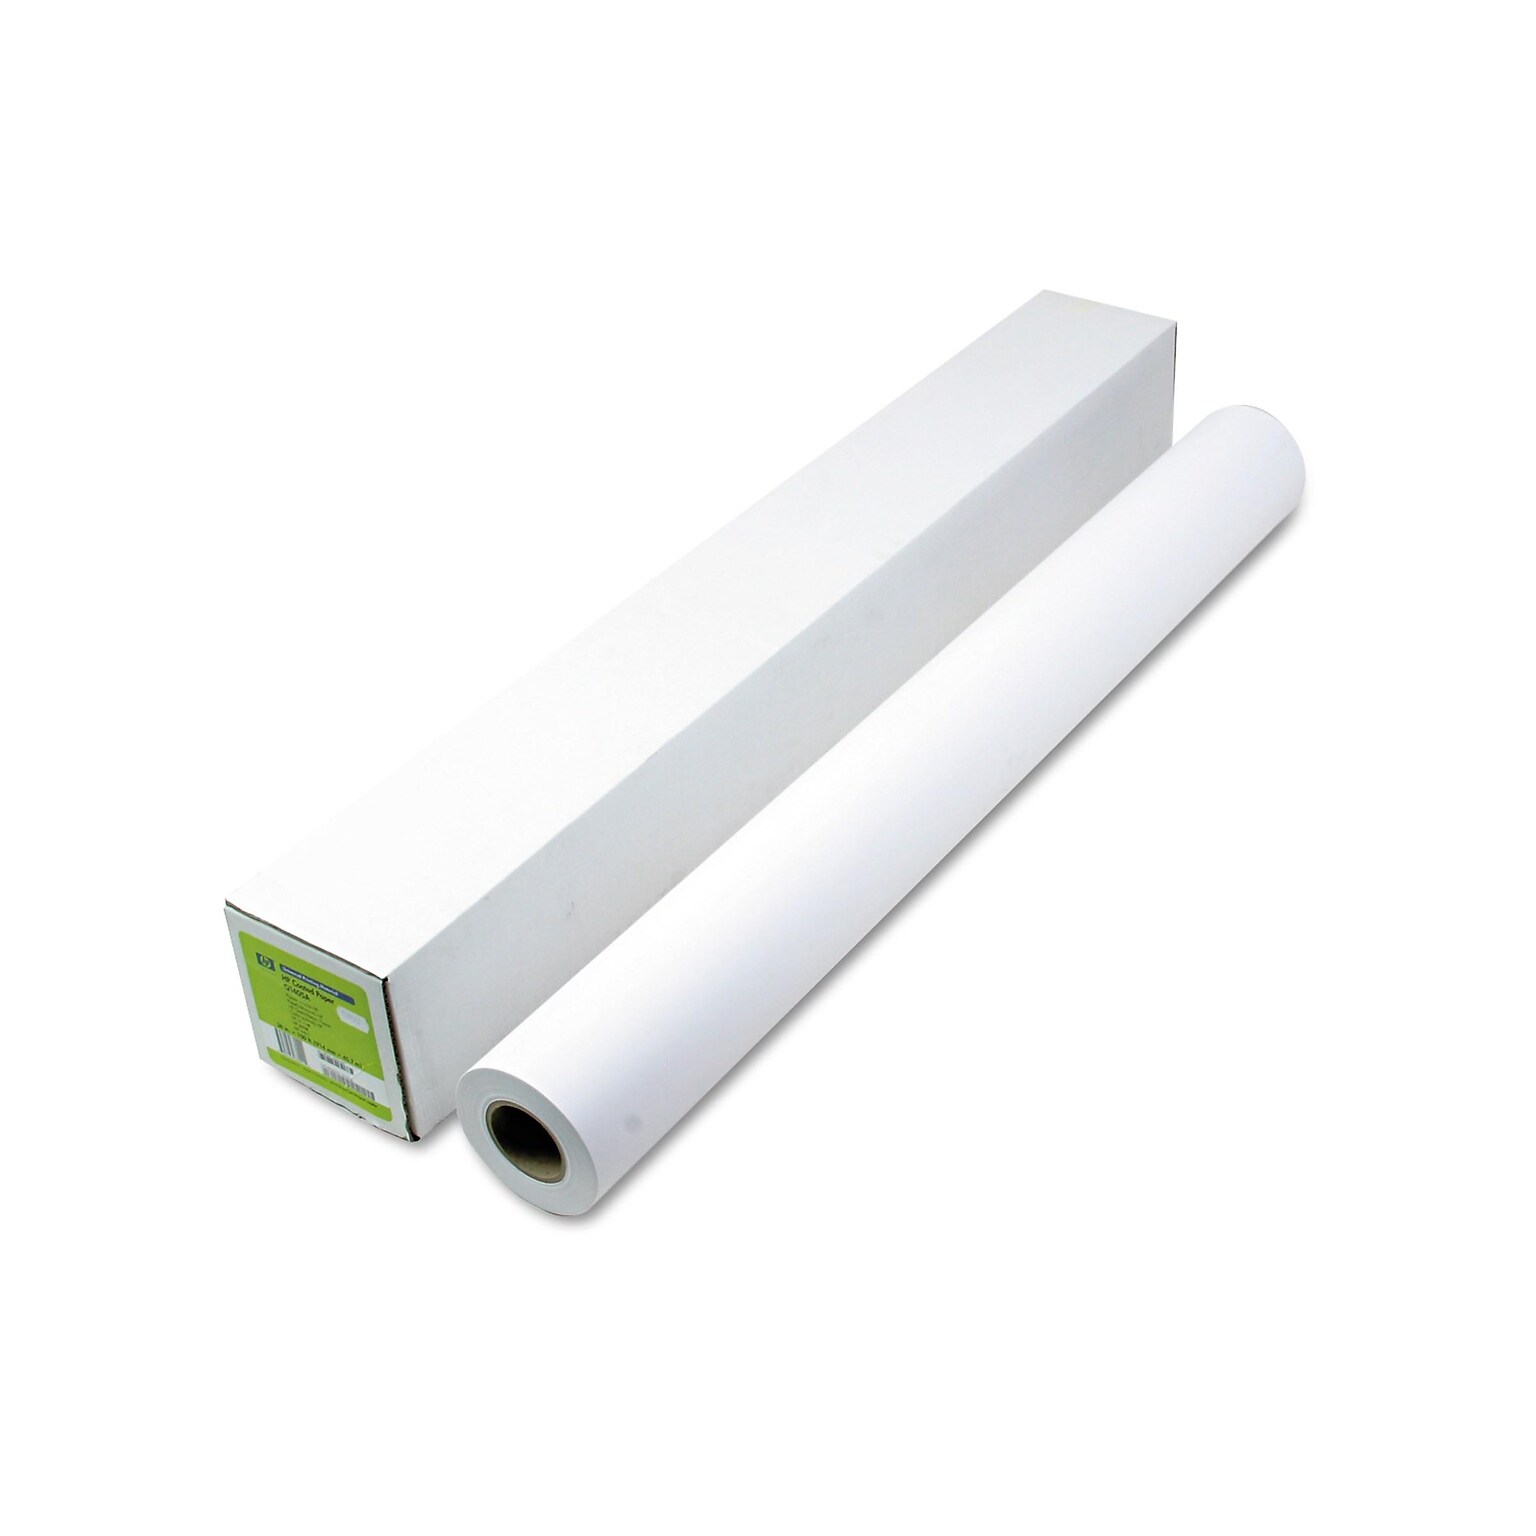 HP Universal Wide Format Bond Paper Roll, 36 x 150 (HEWQ1405B)